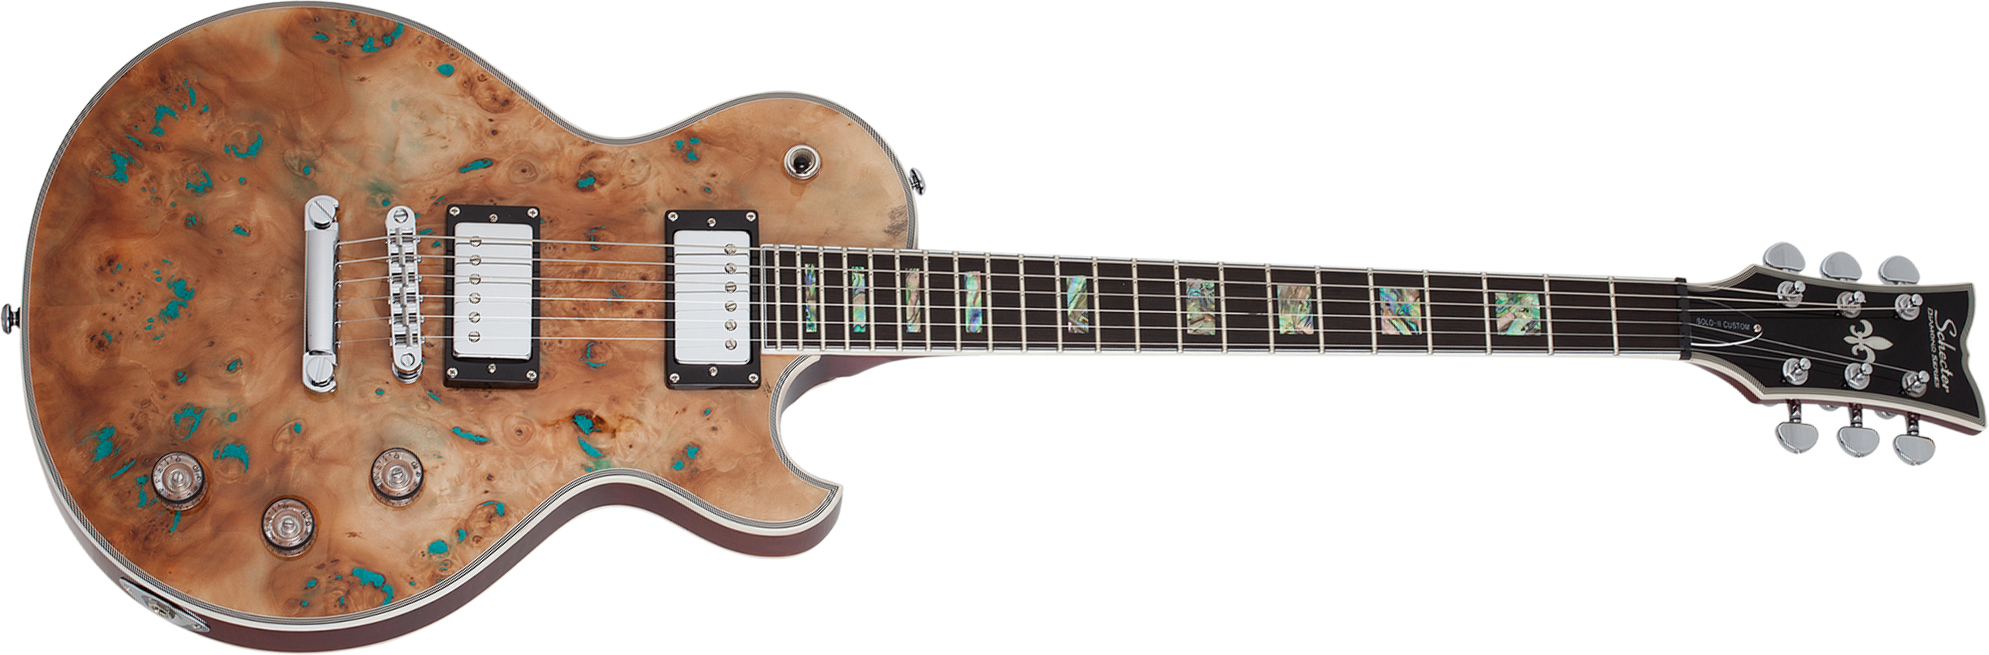 Schecter Solo-ii Custom 2h Ht Eb - Burl Natural - Enkel gesneden elektrische gitaar - Main picture